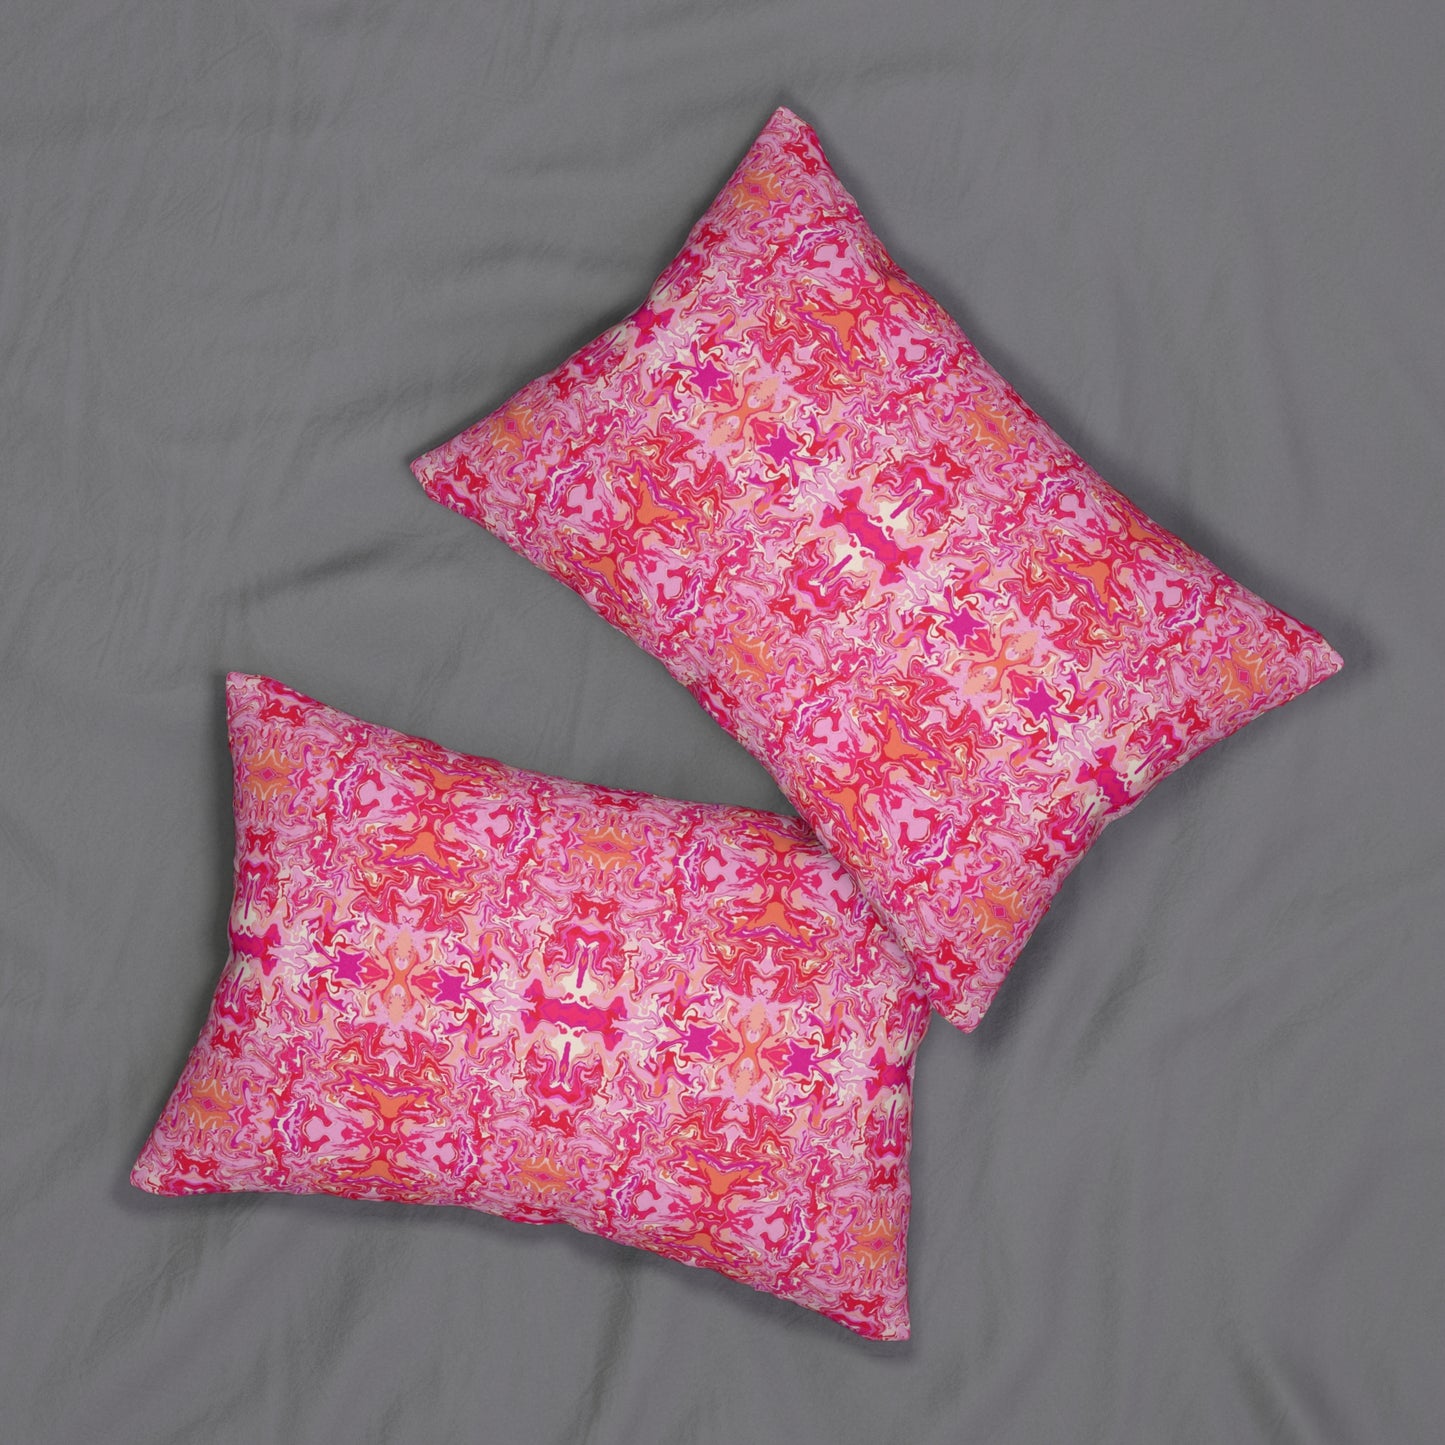 Boho Bougainvillea Garden Spun Polyester Lumbar Pillow